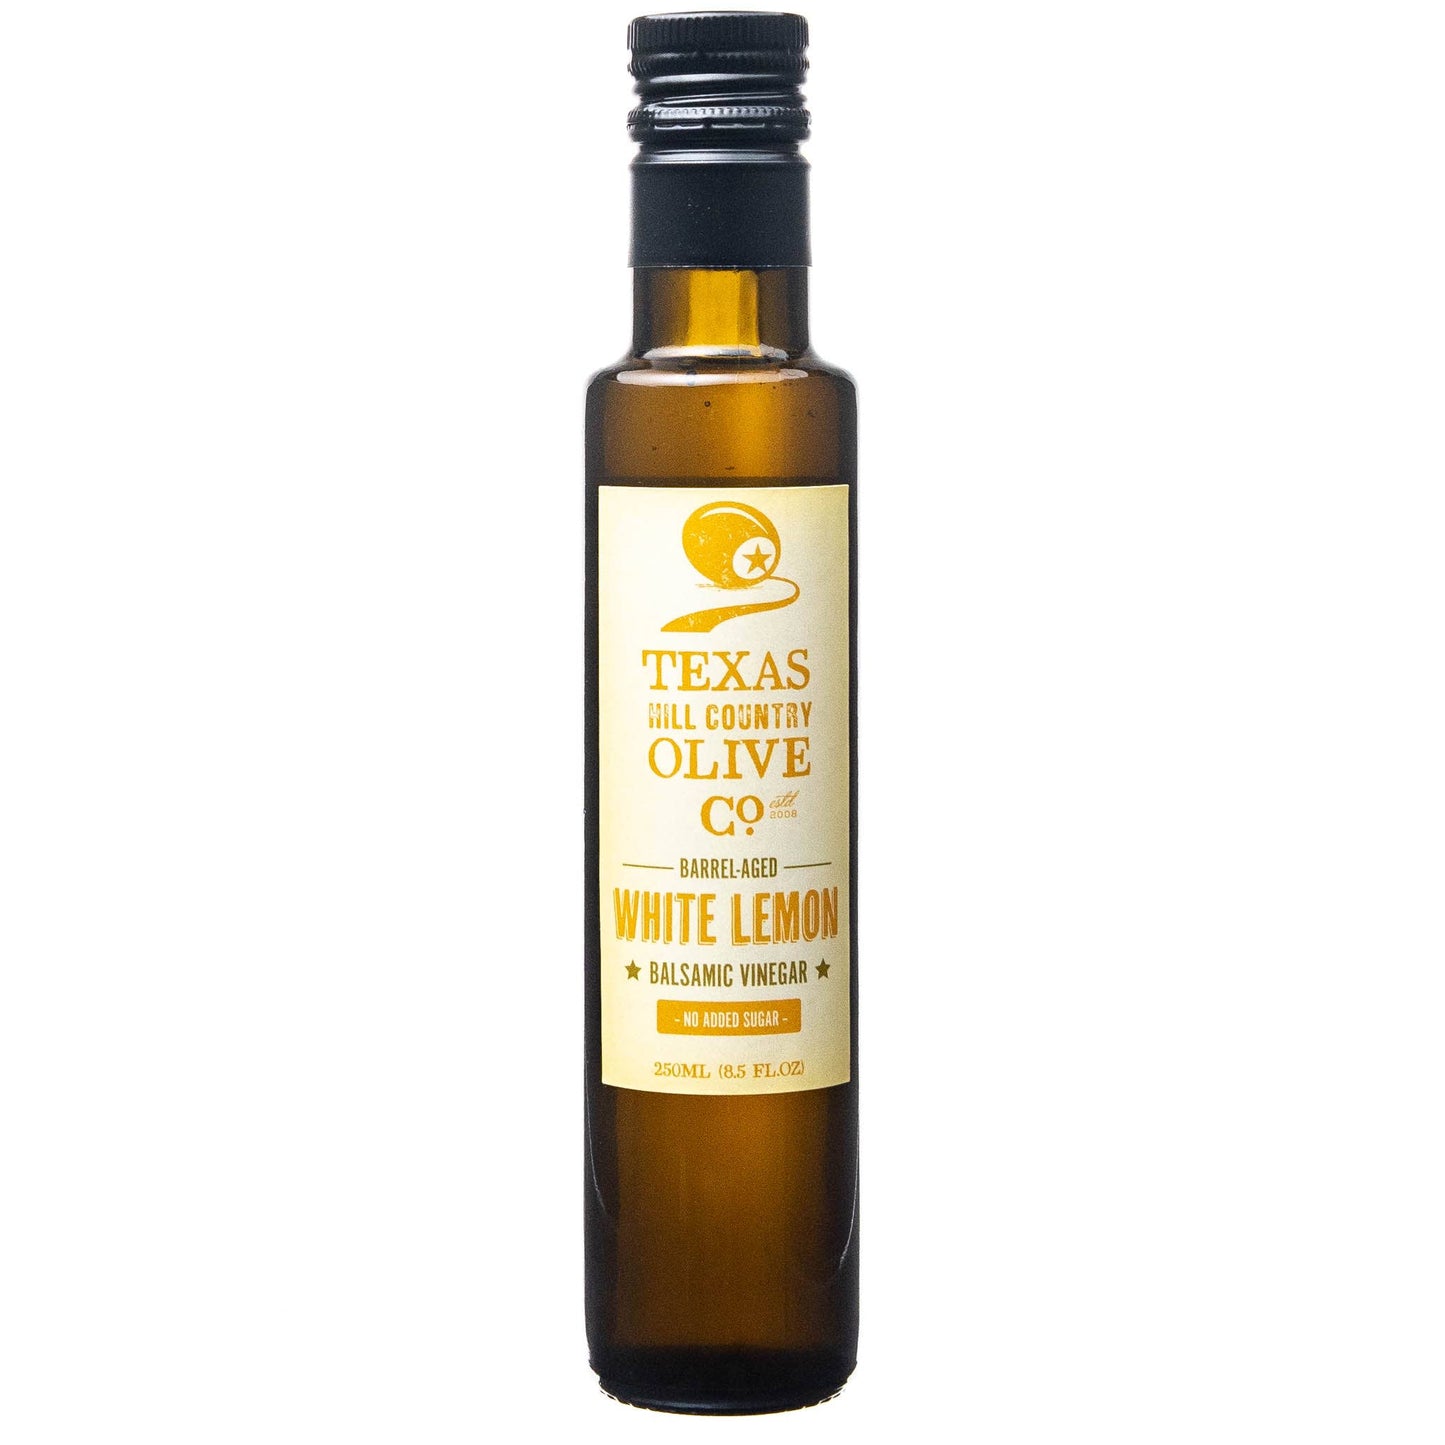 Texas Hill Country Olive Co. - White Lemon Balsamic Vinegar - 250ml